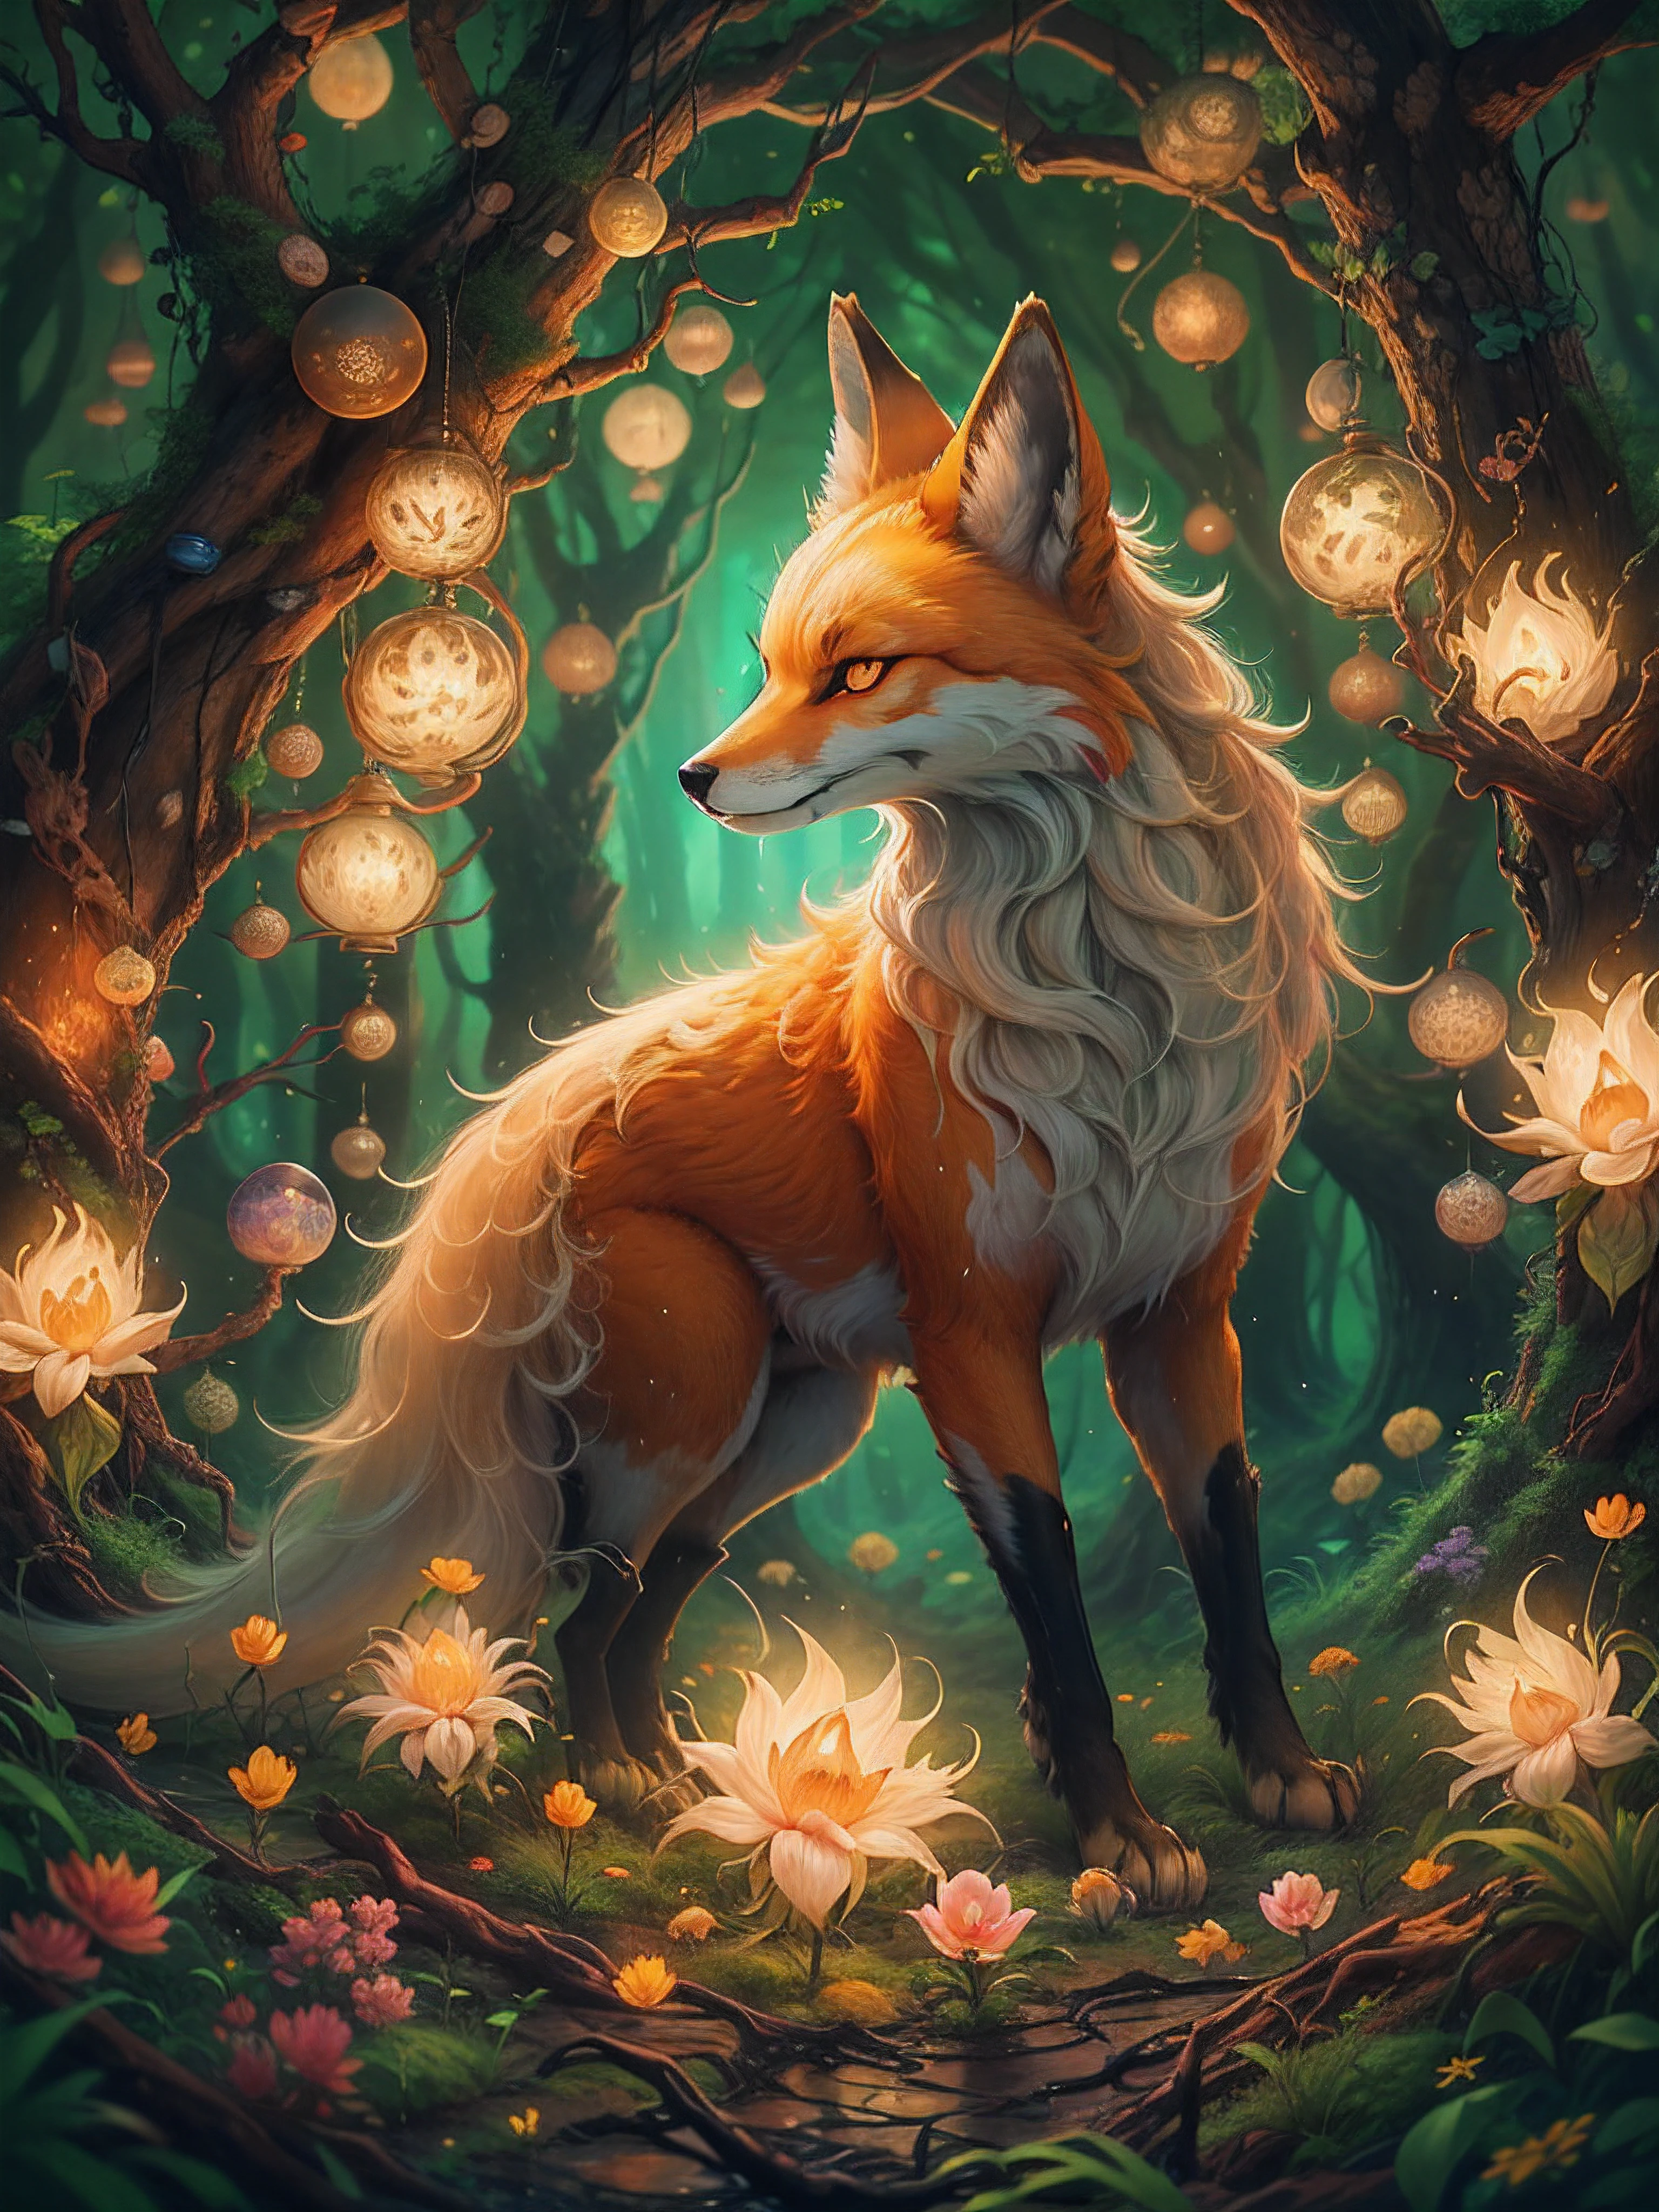 神秘森林中九尾狐的美麗數位繪畫. 狐狸被發光的光球包圍，森林裡長滿了鬱鬱蔥蔥的綠樹和鮮花. 這幅畫有一種溫暖而誘人的感覺.